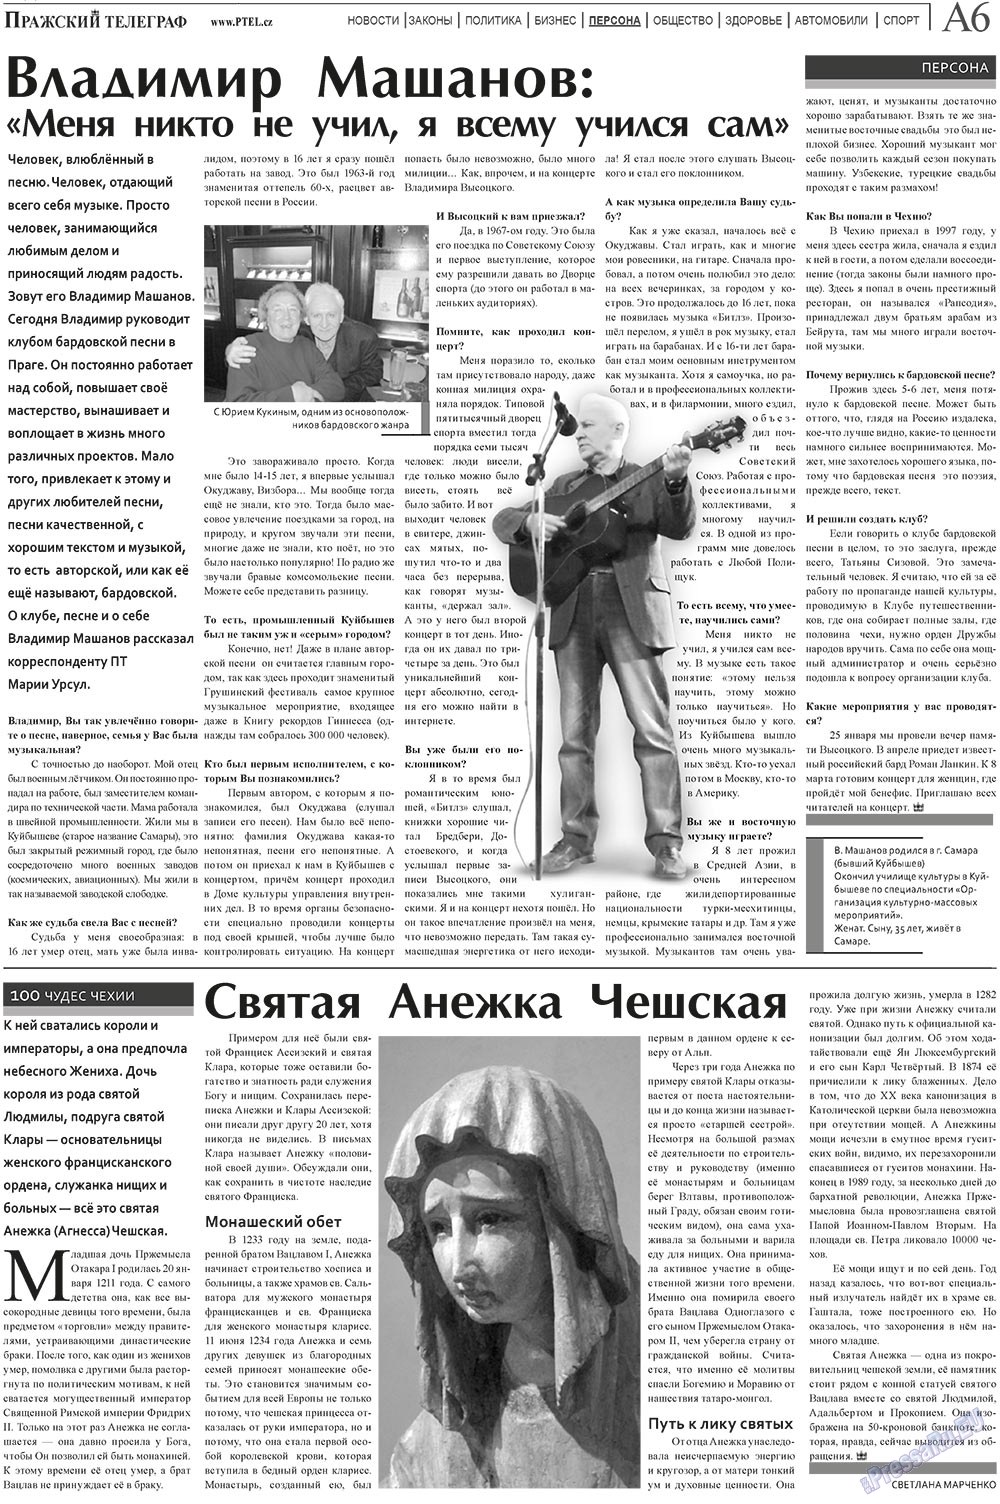 Пражский телеграф (газета). 2011 год, номер 4, стр. 6